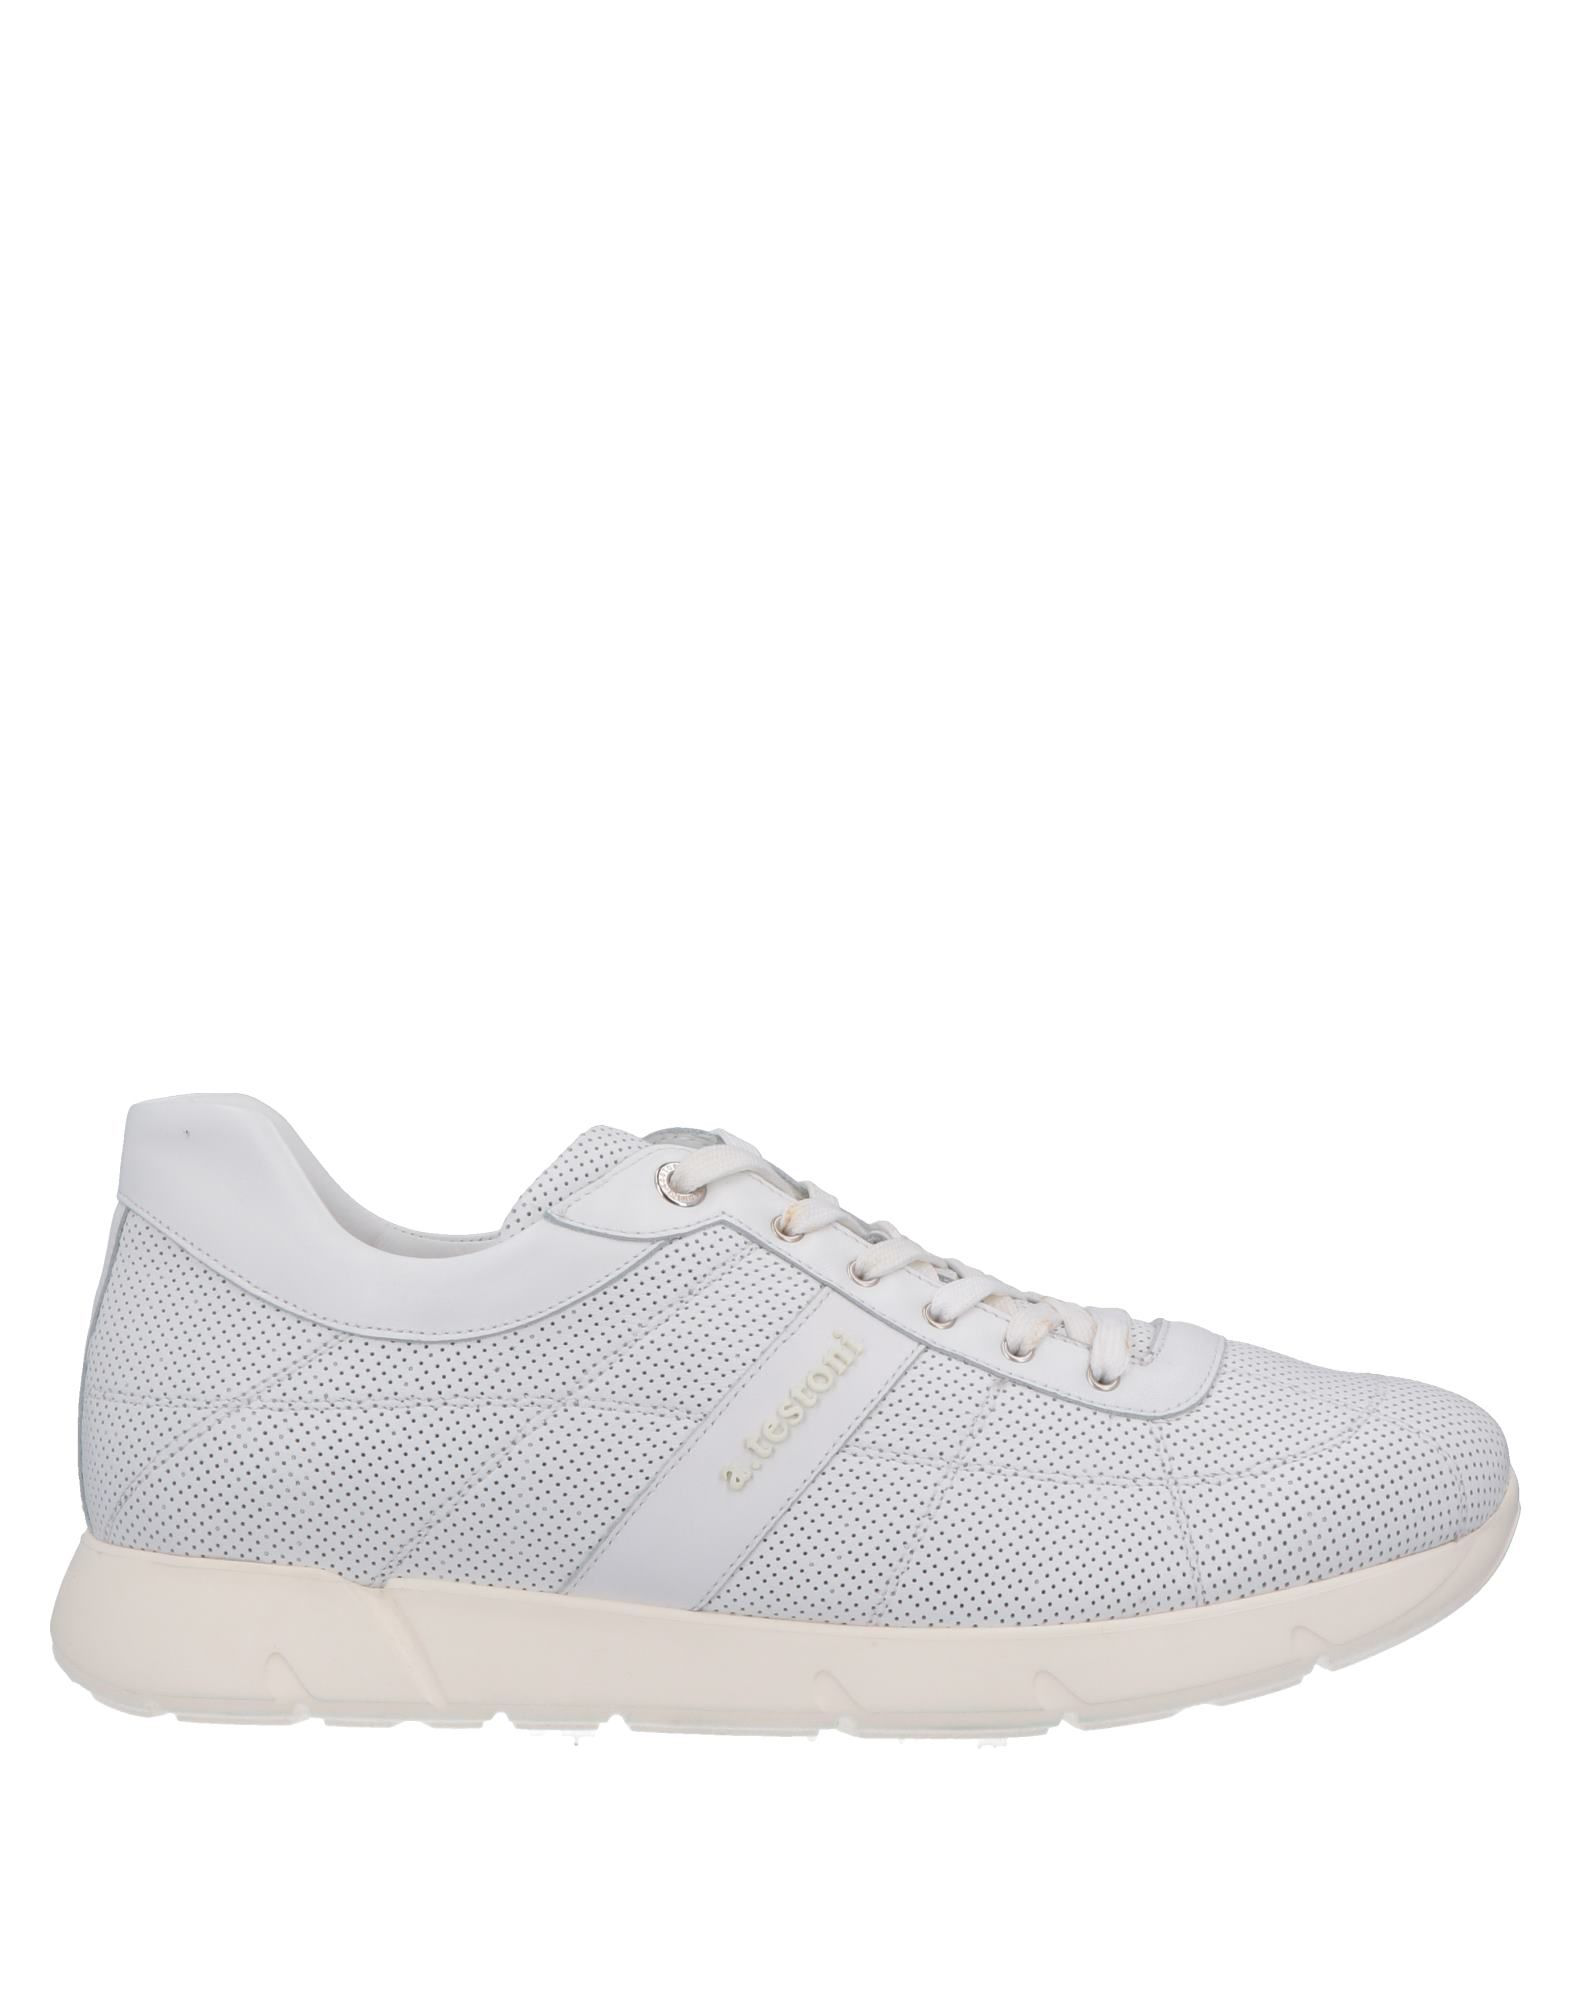 A.testoni Sneakers In White | ModeSens